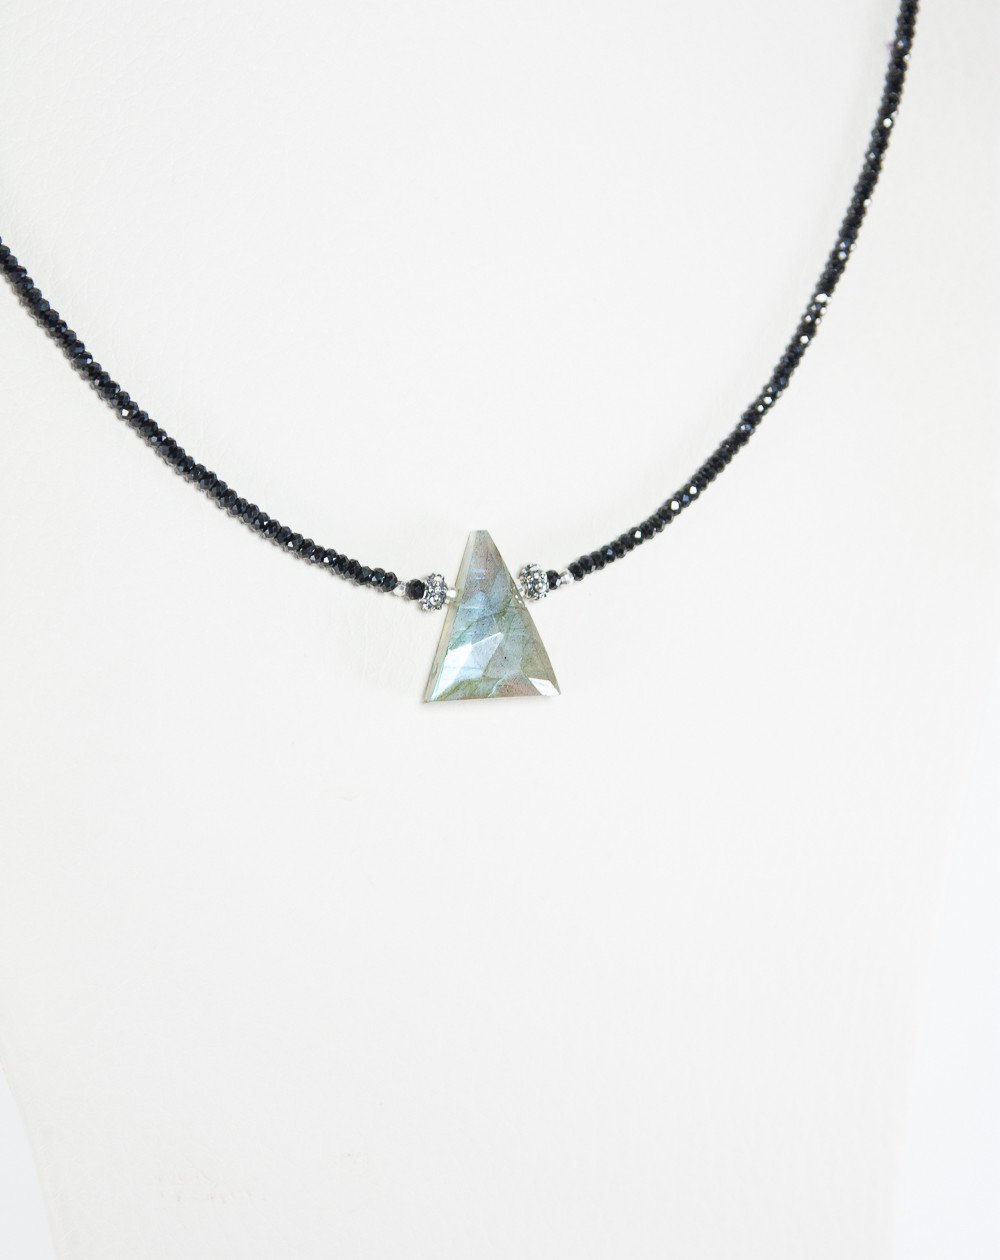 Collier Spinelle triangle de Labradorite, Créateurs Français. Sanuk Création